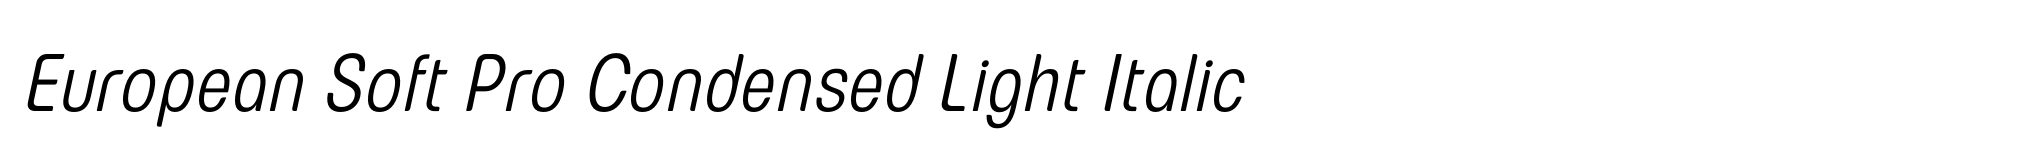 European Soft Pro Condensed Light Italic image